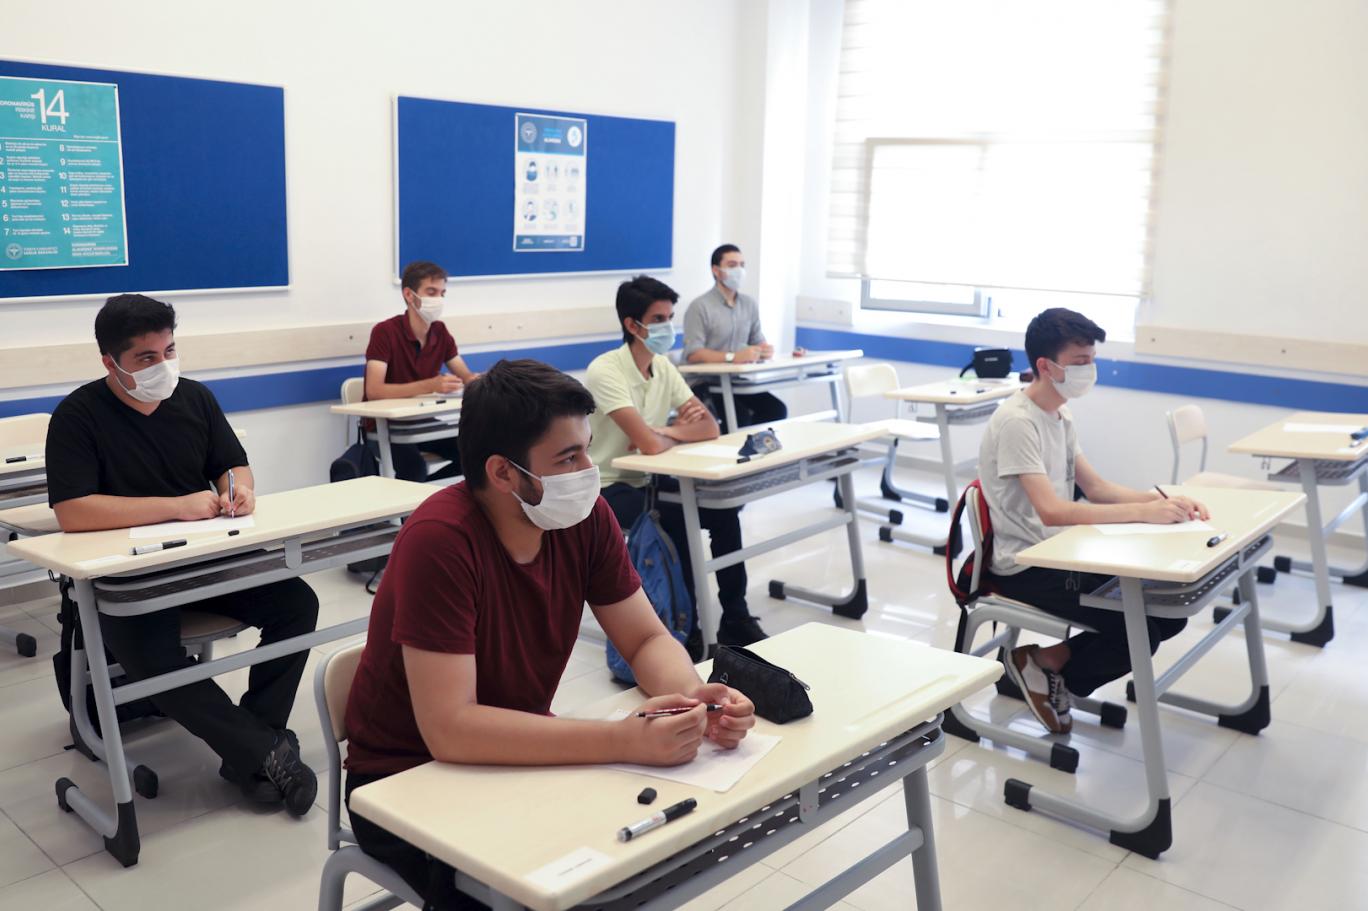 MEB'den yüz yüze eğitim açıklaması: Henüz netleşmemiştir | Independent Türkçe